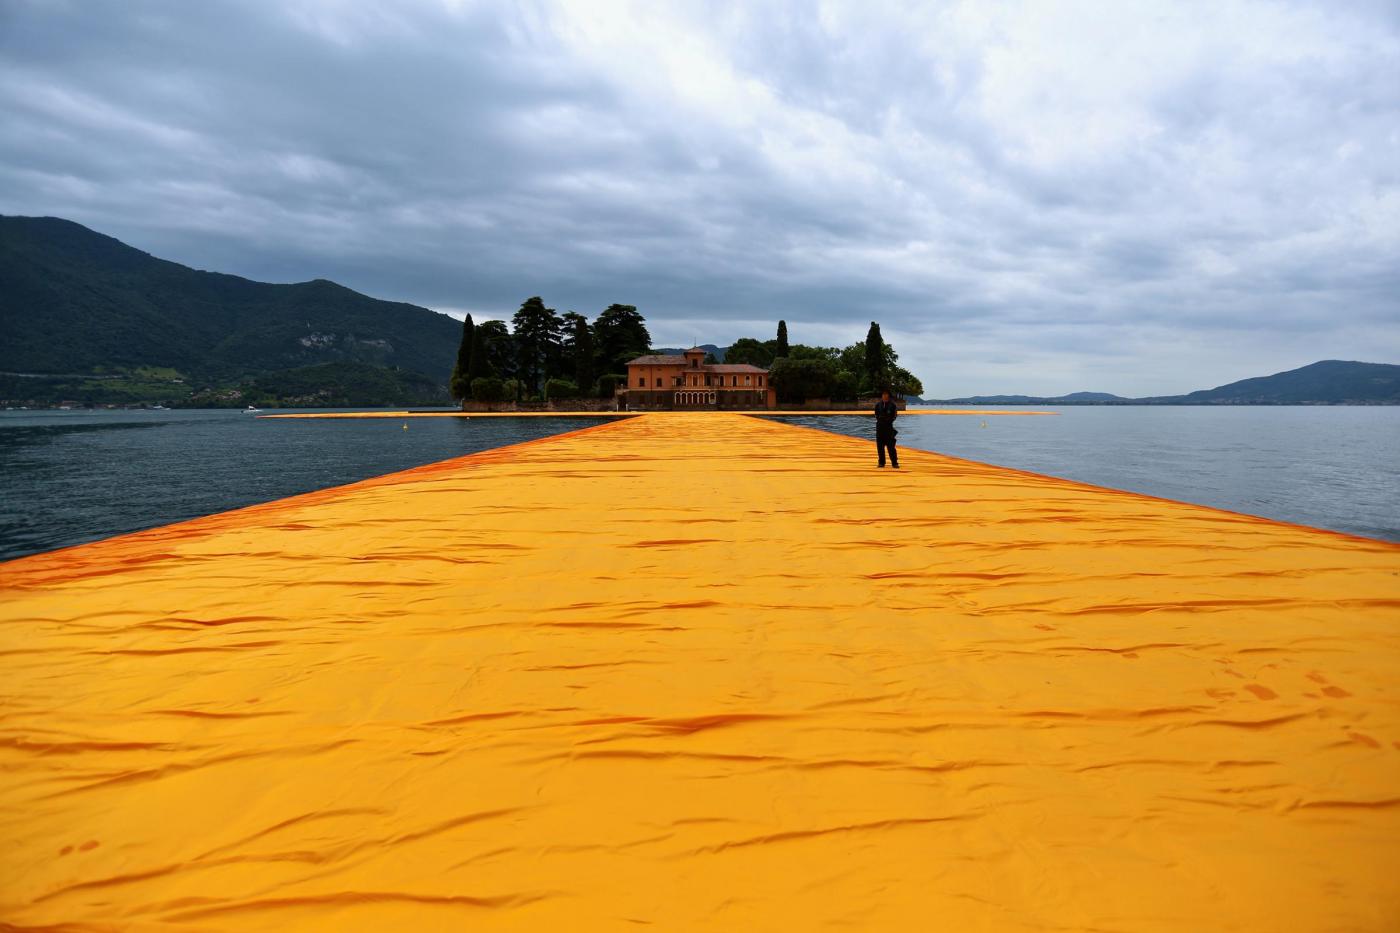 L'installazione di Christo sul lago d'Iseo